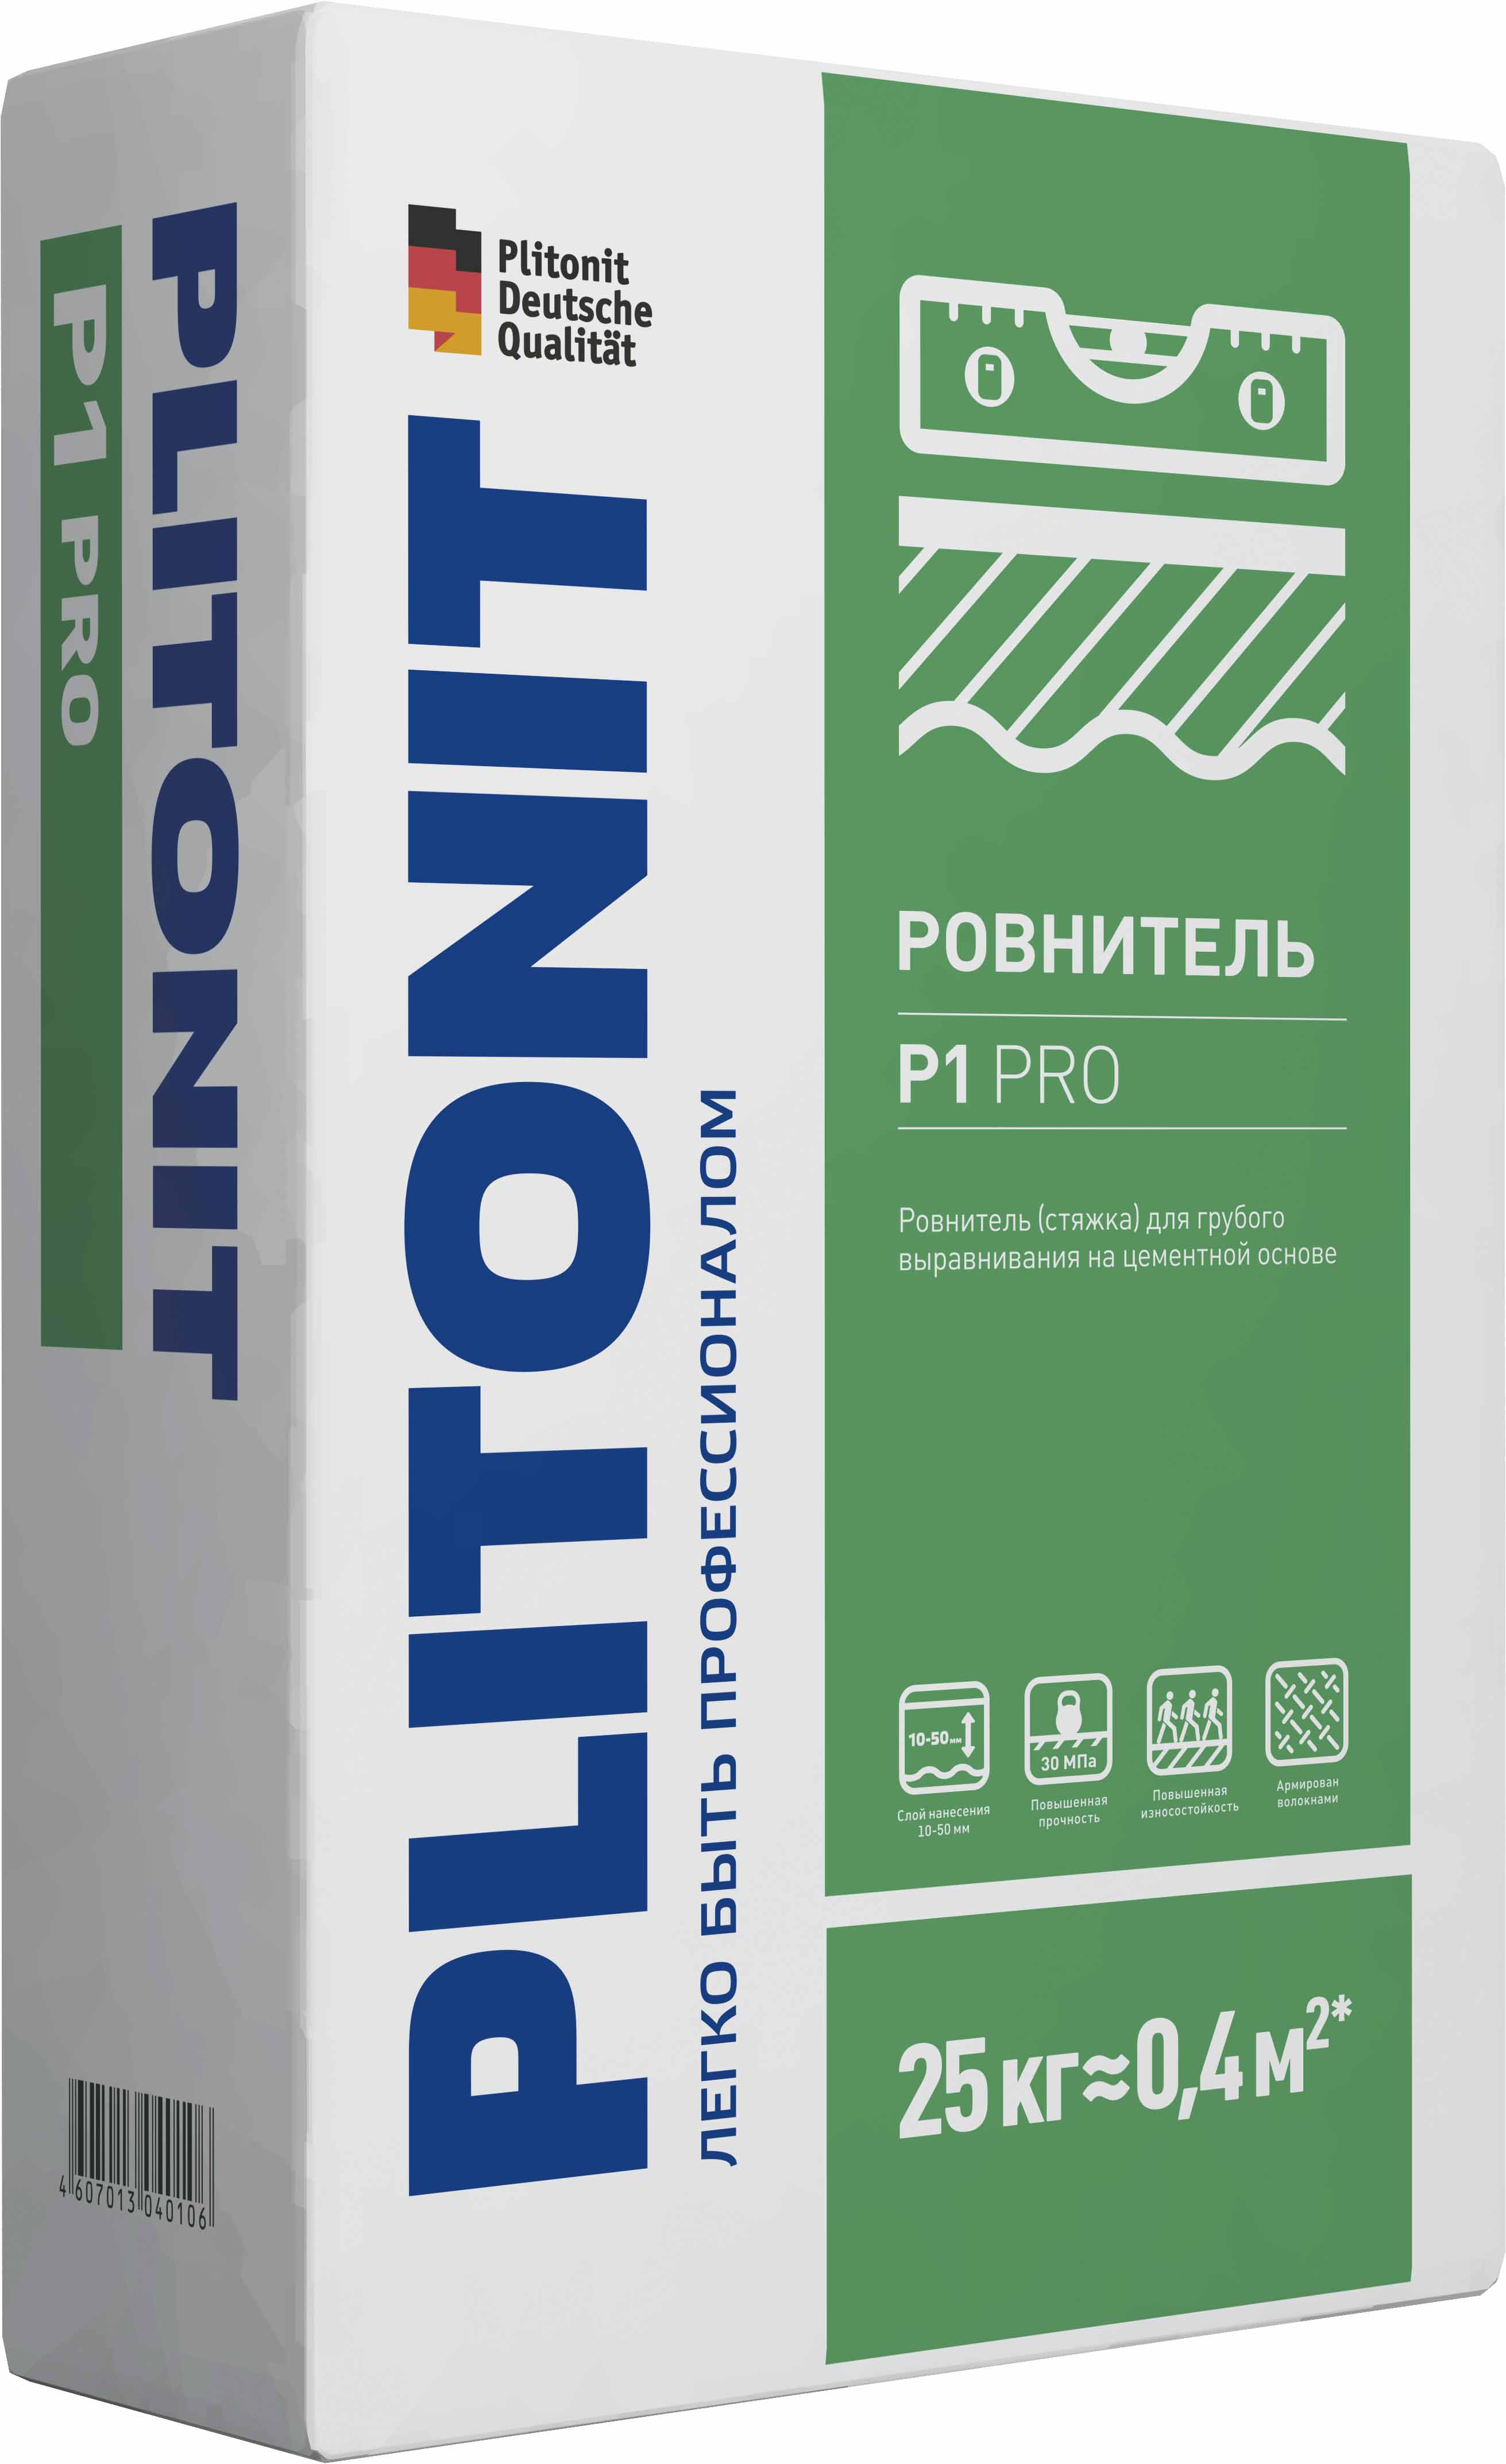 Plitonit P1 Pro 25 кг, ровнитель для пола